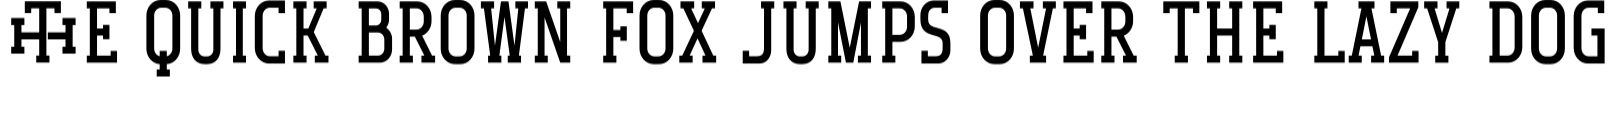 Monogram Holder specimen 14